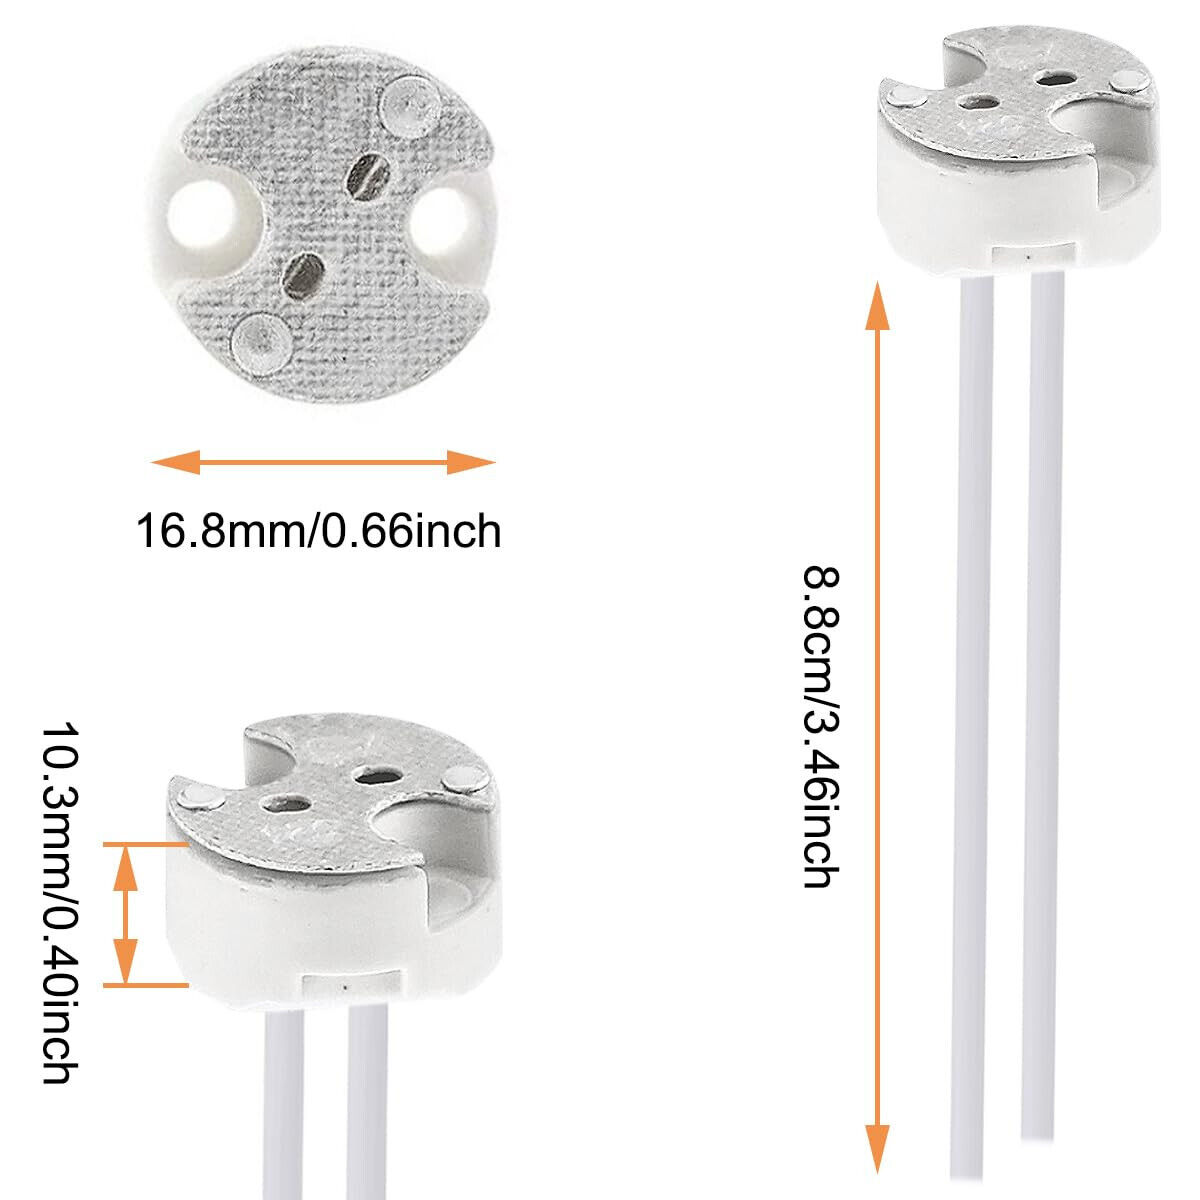 10x 12V Lampenfassung Sockel Adapter universal für G4 MR16 GU5.3 MR11 GU4 GY6.35